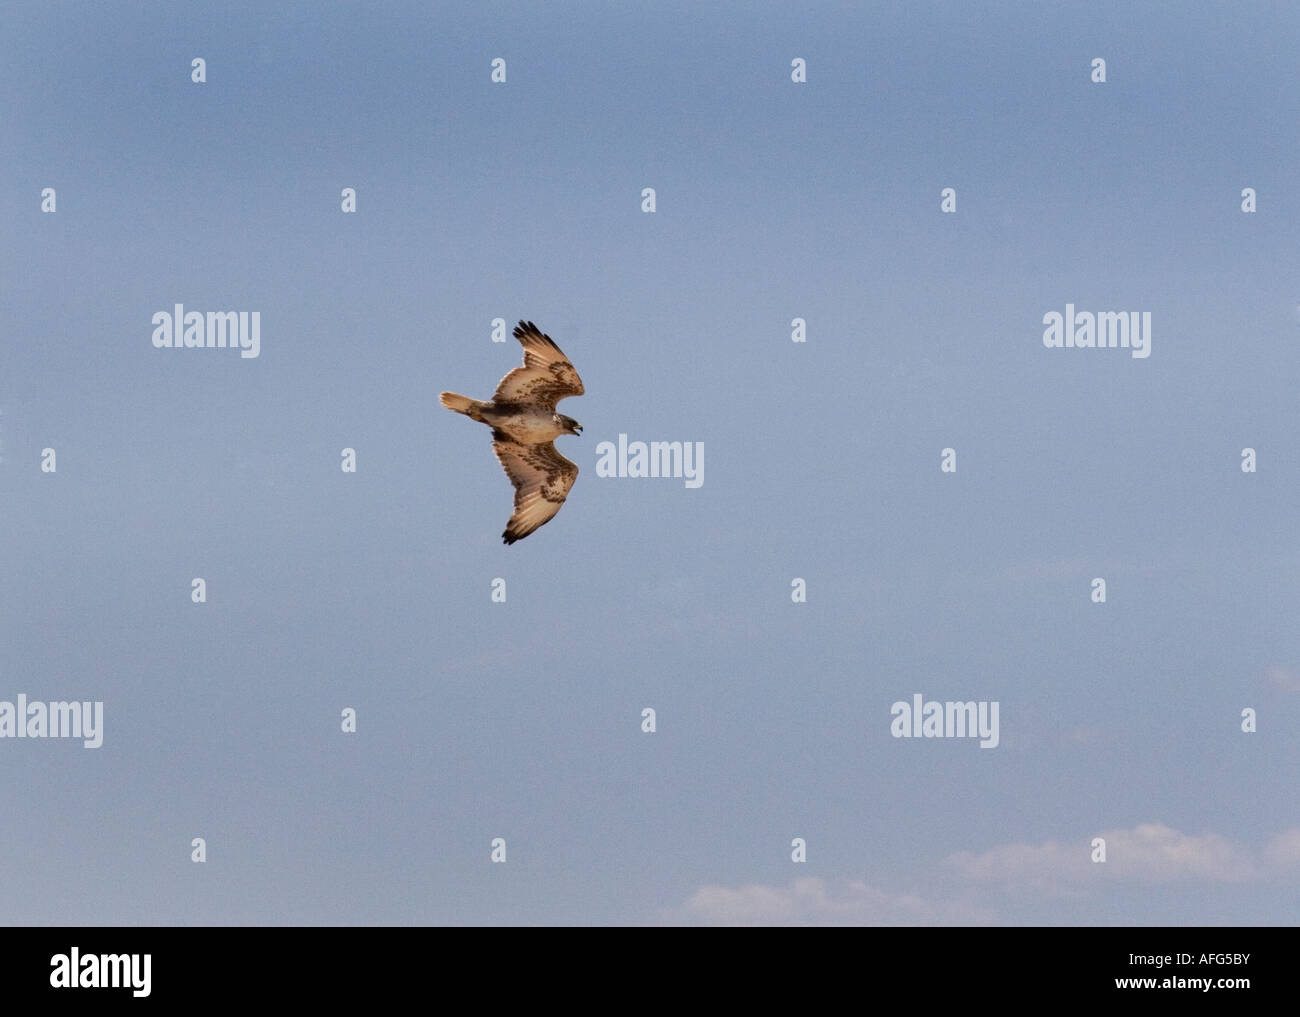 Ferruginous hawk soaring over the skies in Utah Stock Photo